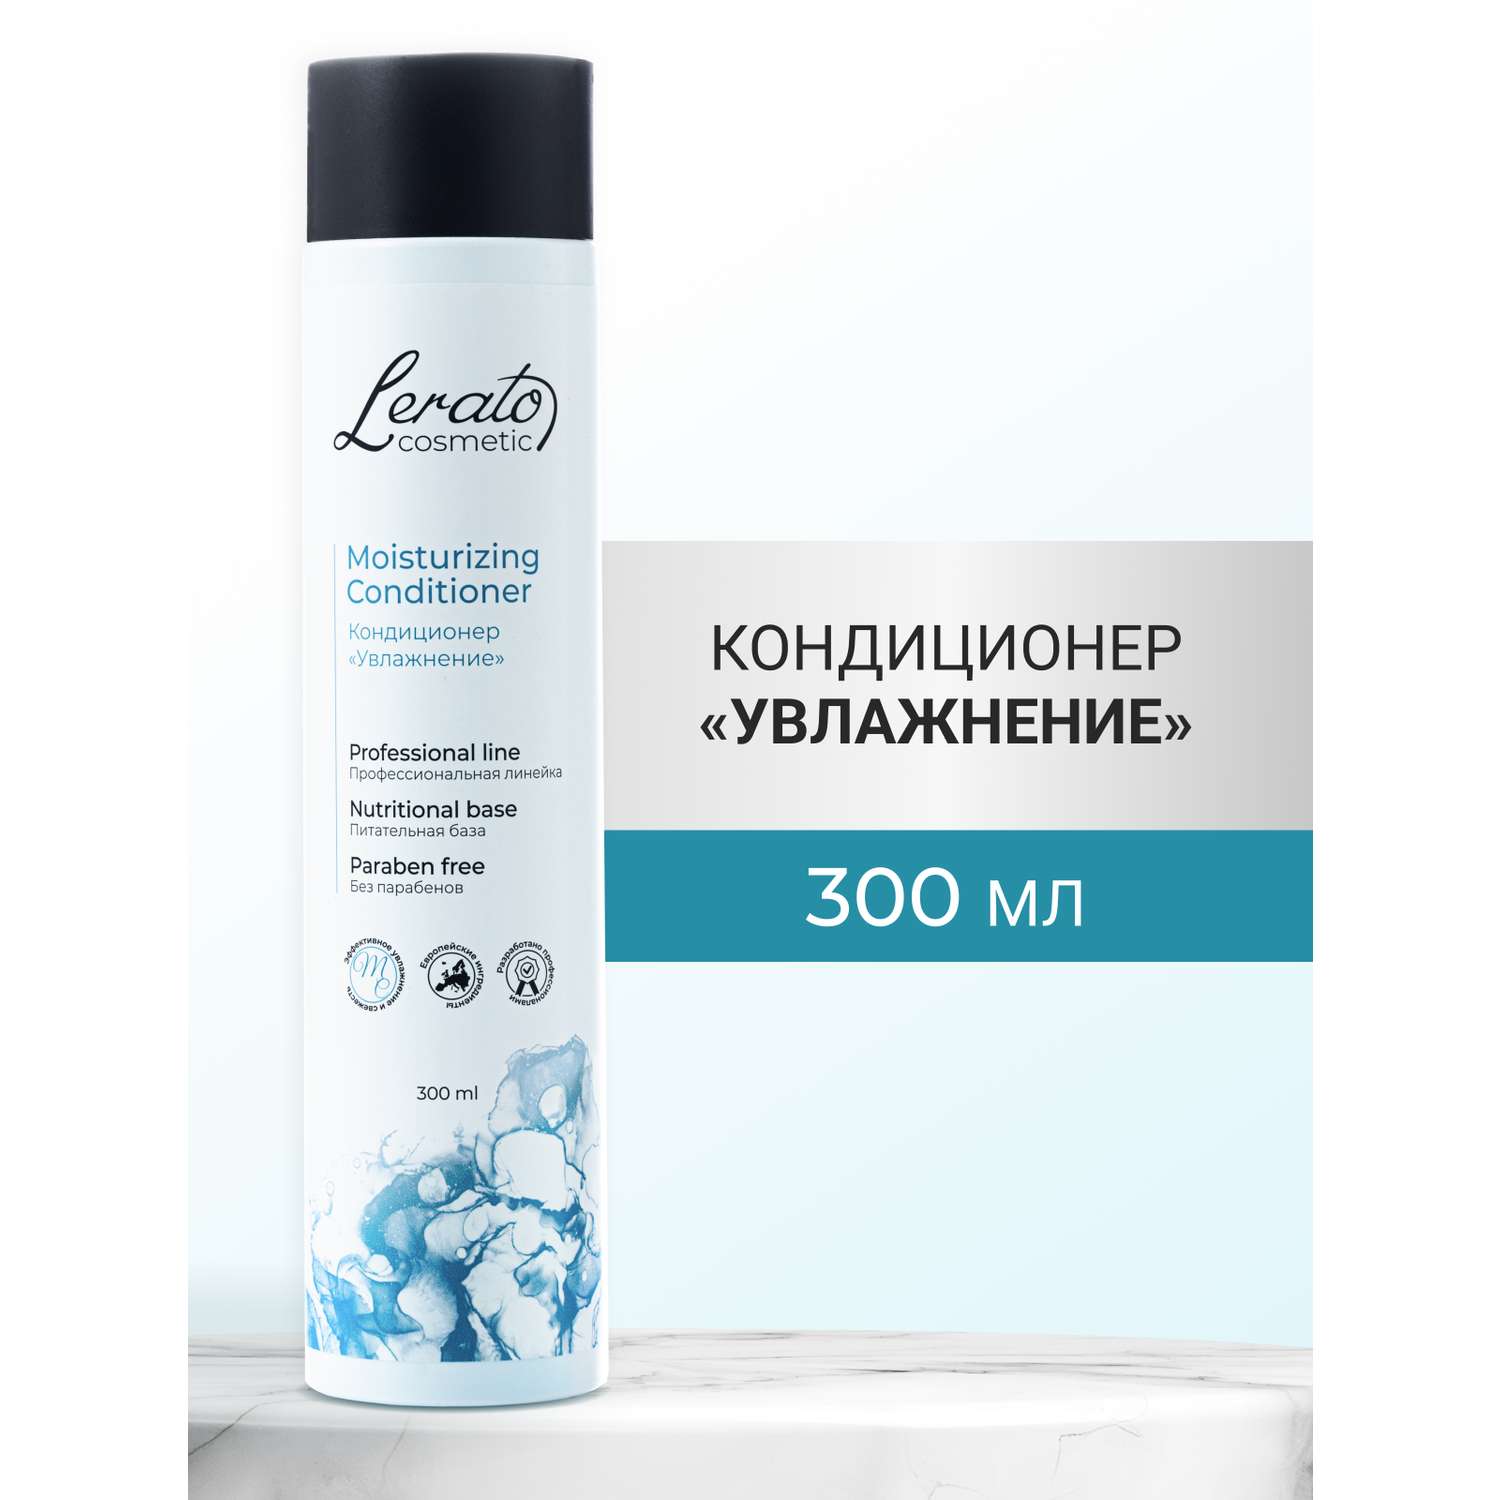 Кондиционер Lerato Cosmetic для увлажнения и продления свежести волос 300 мл - фото 1